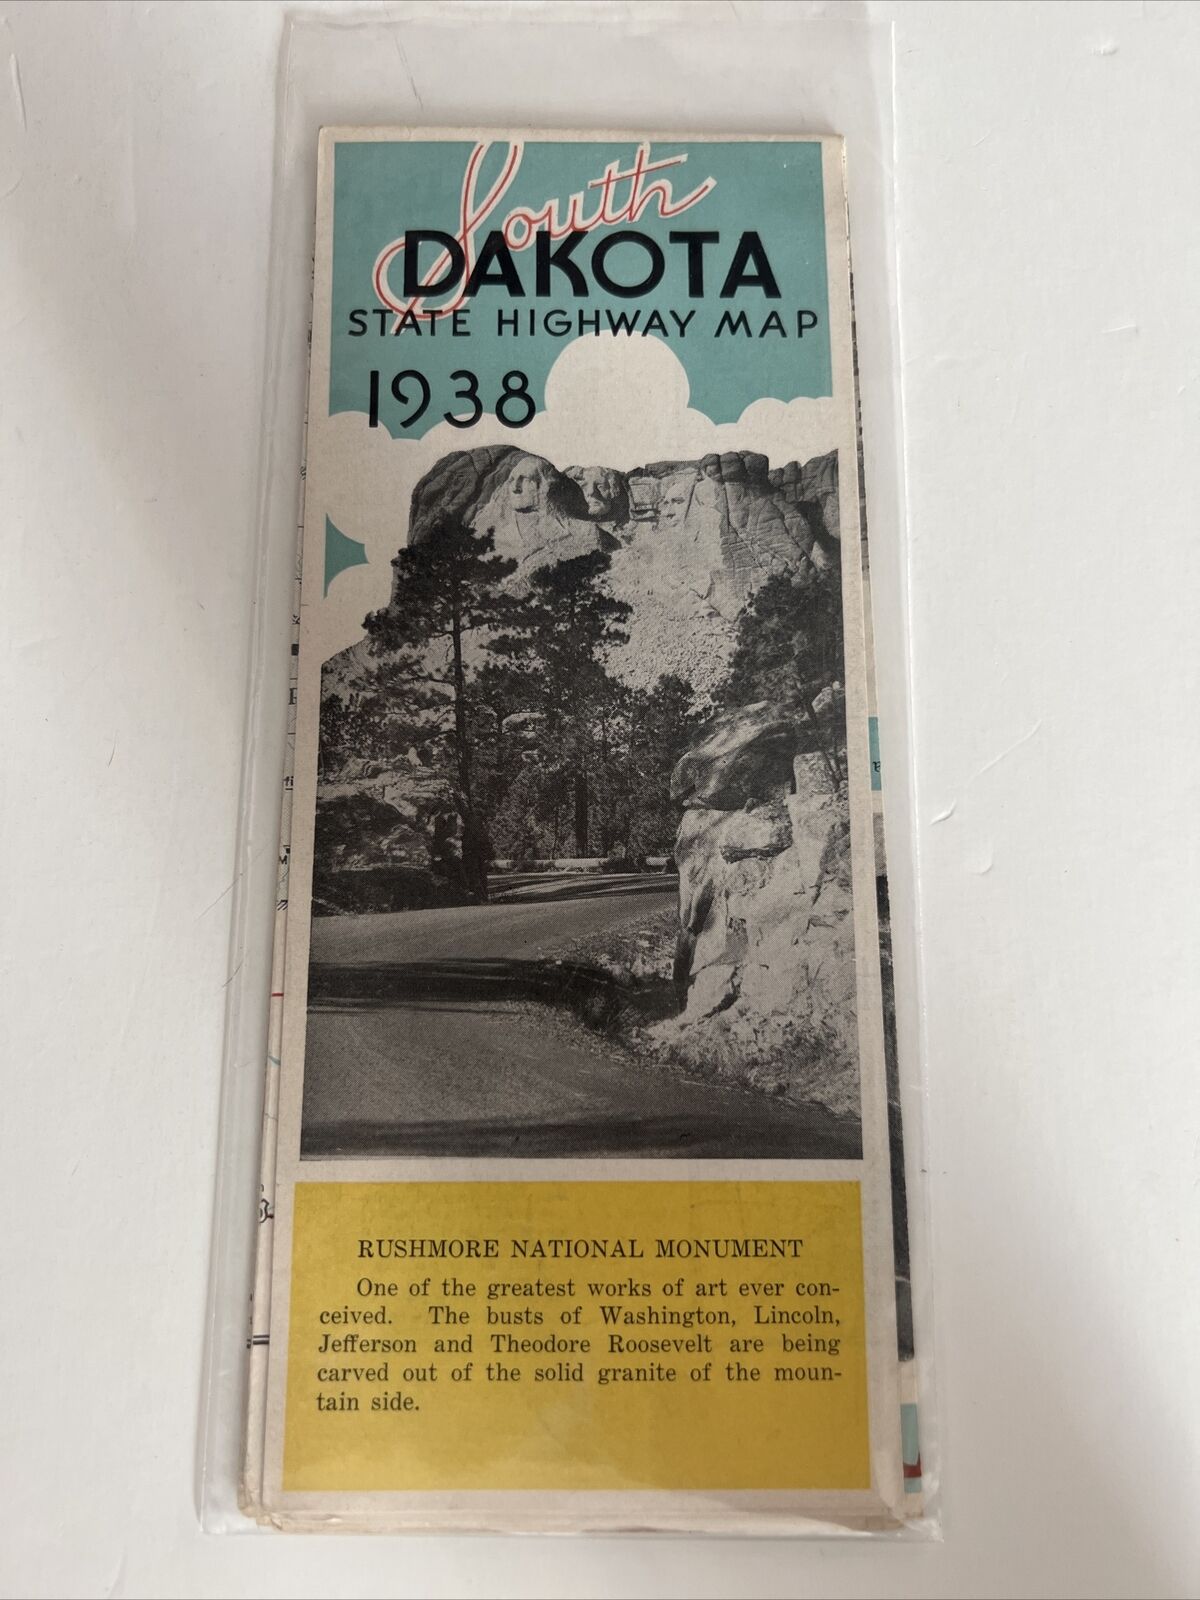 1938 South Dakota State Highway Map